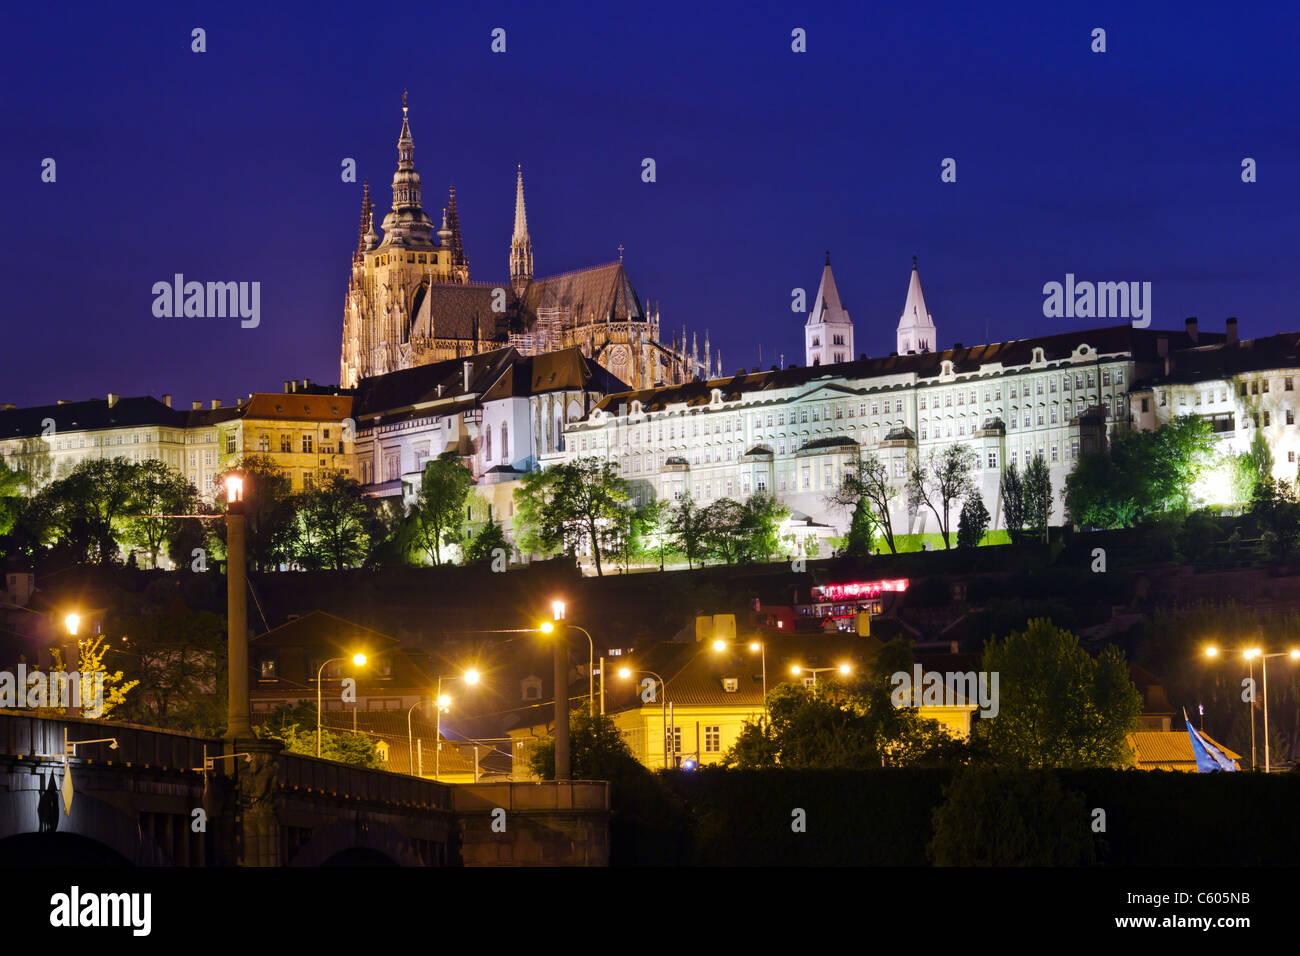 El castillo de Praga en la noche las luces Foto de stock